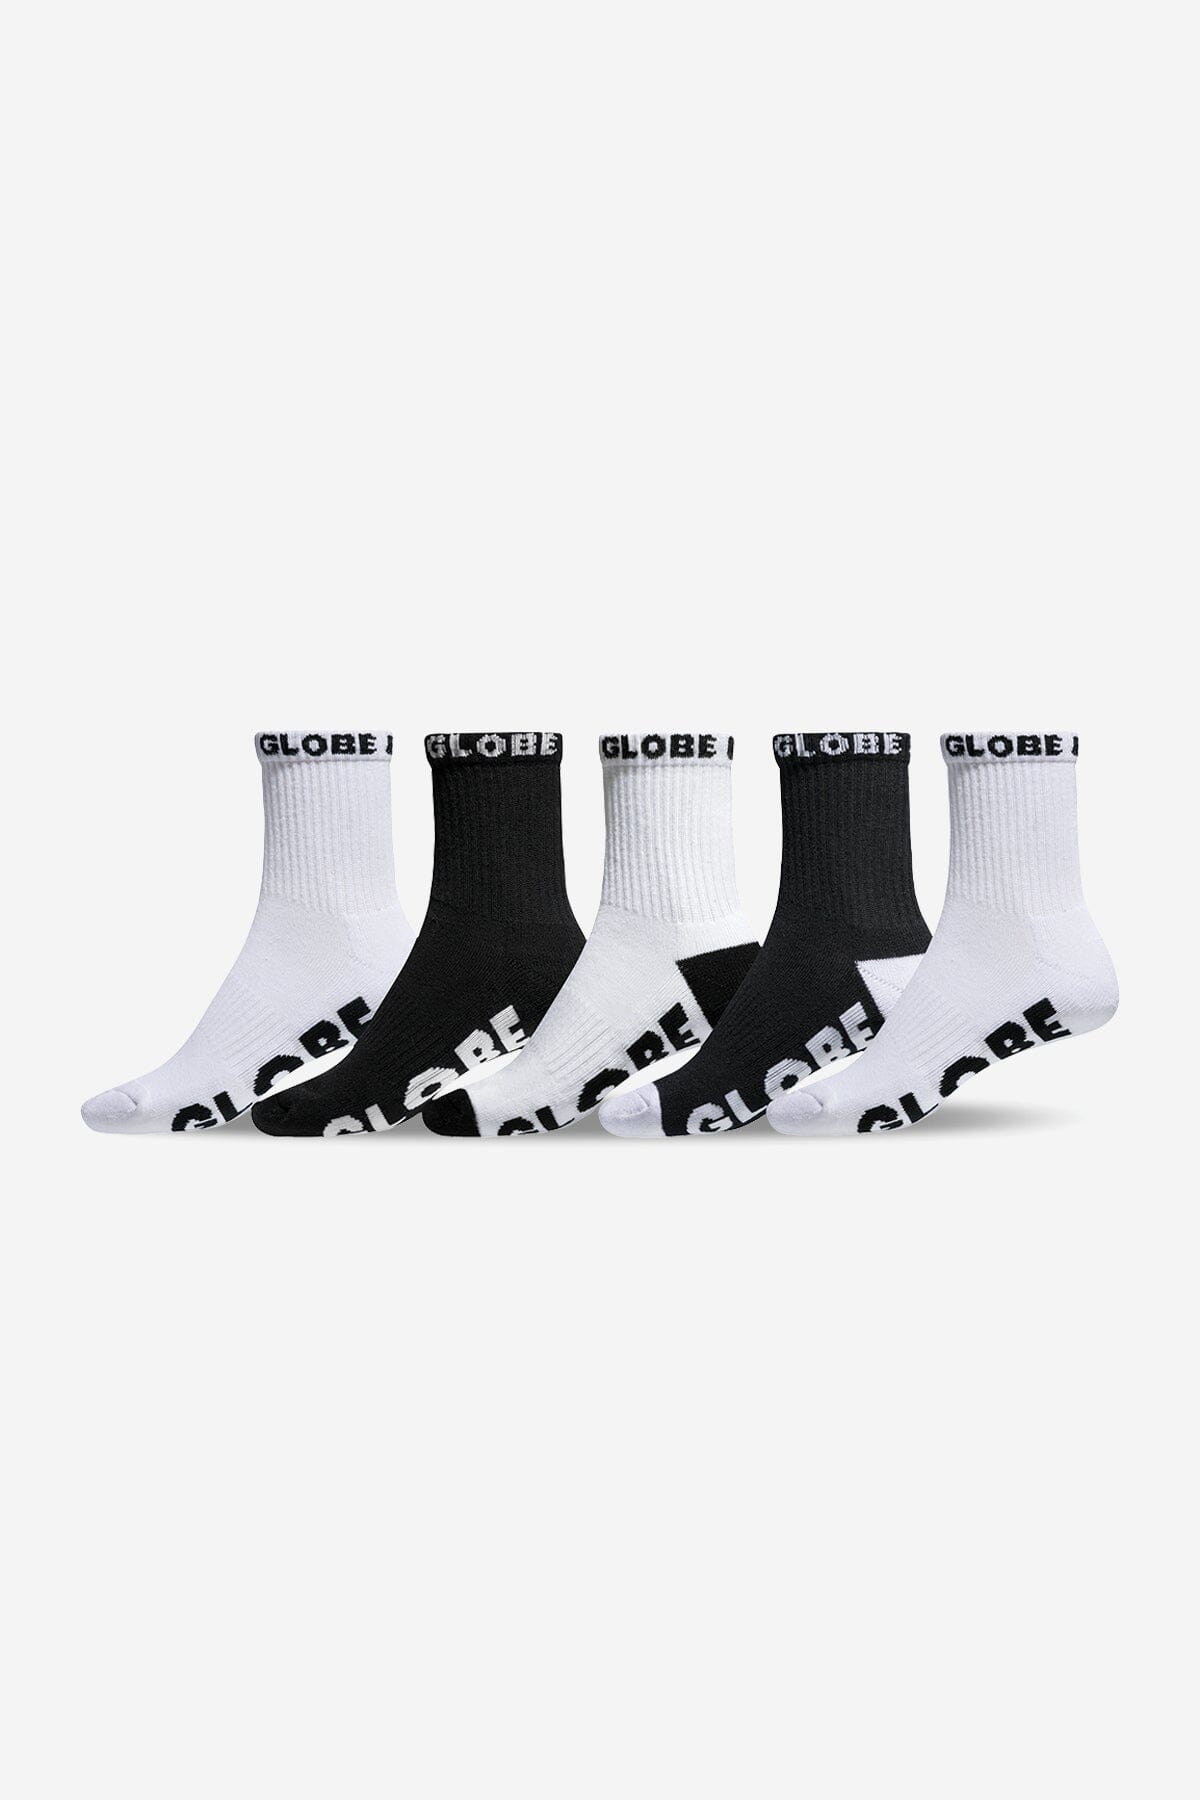 GLOBE Quarter Socks 5 Pack Black/White Men's Socks Globe 